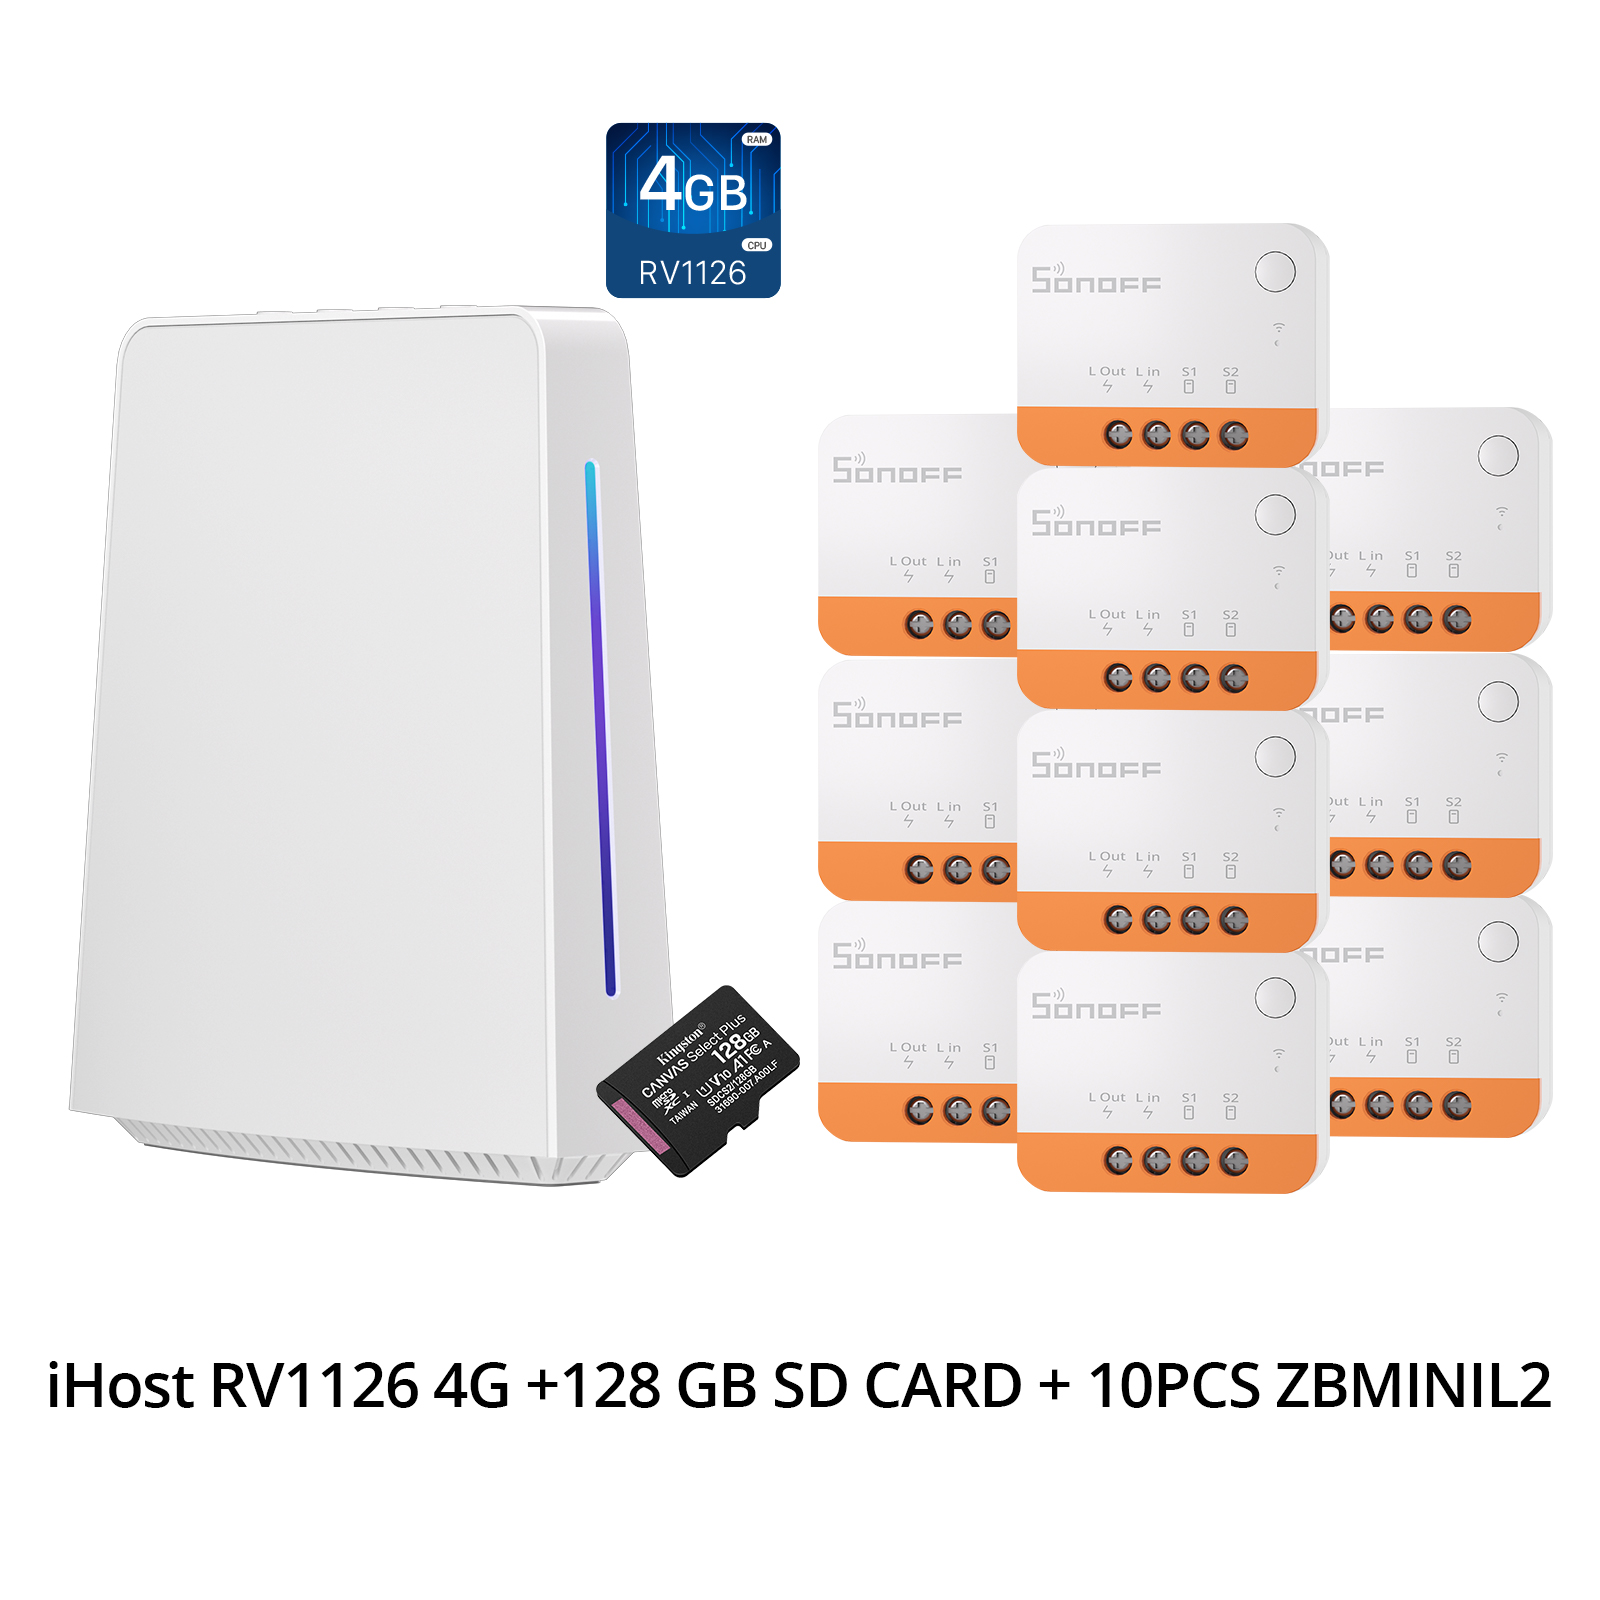 1 PCS iHost RV1126 4G +128 GB SD Card + 10PCS ZBMINIL2